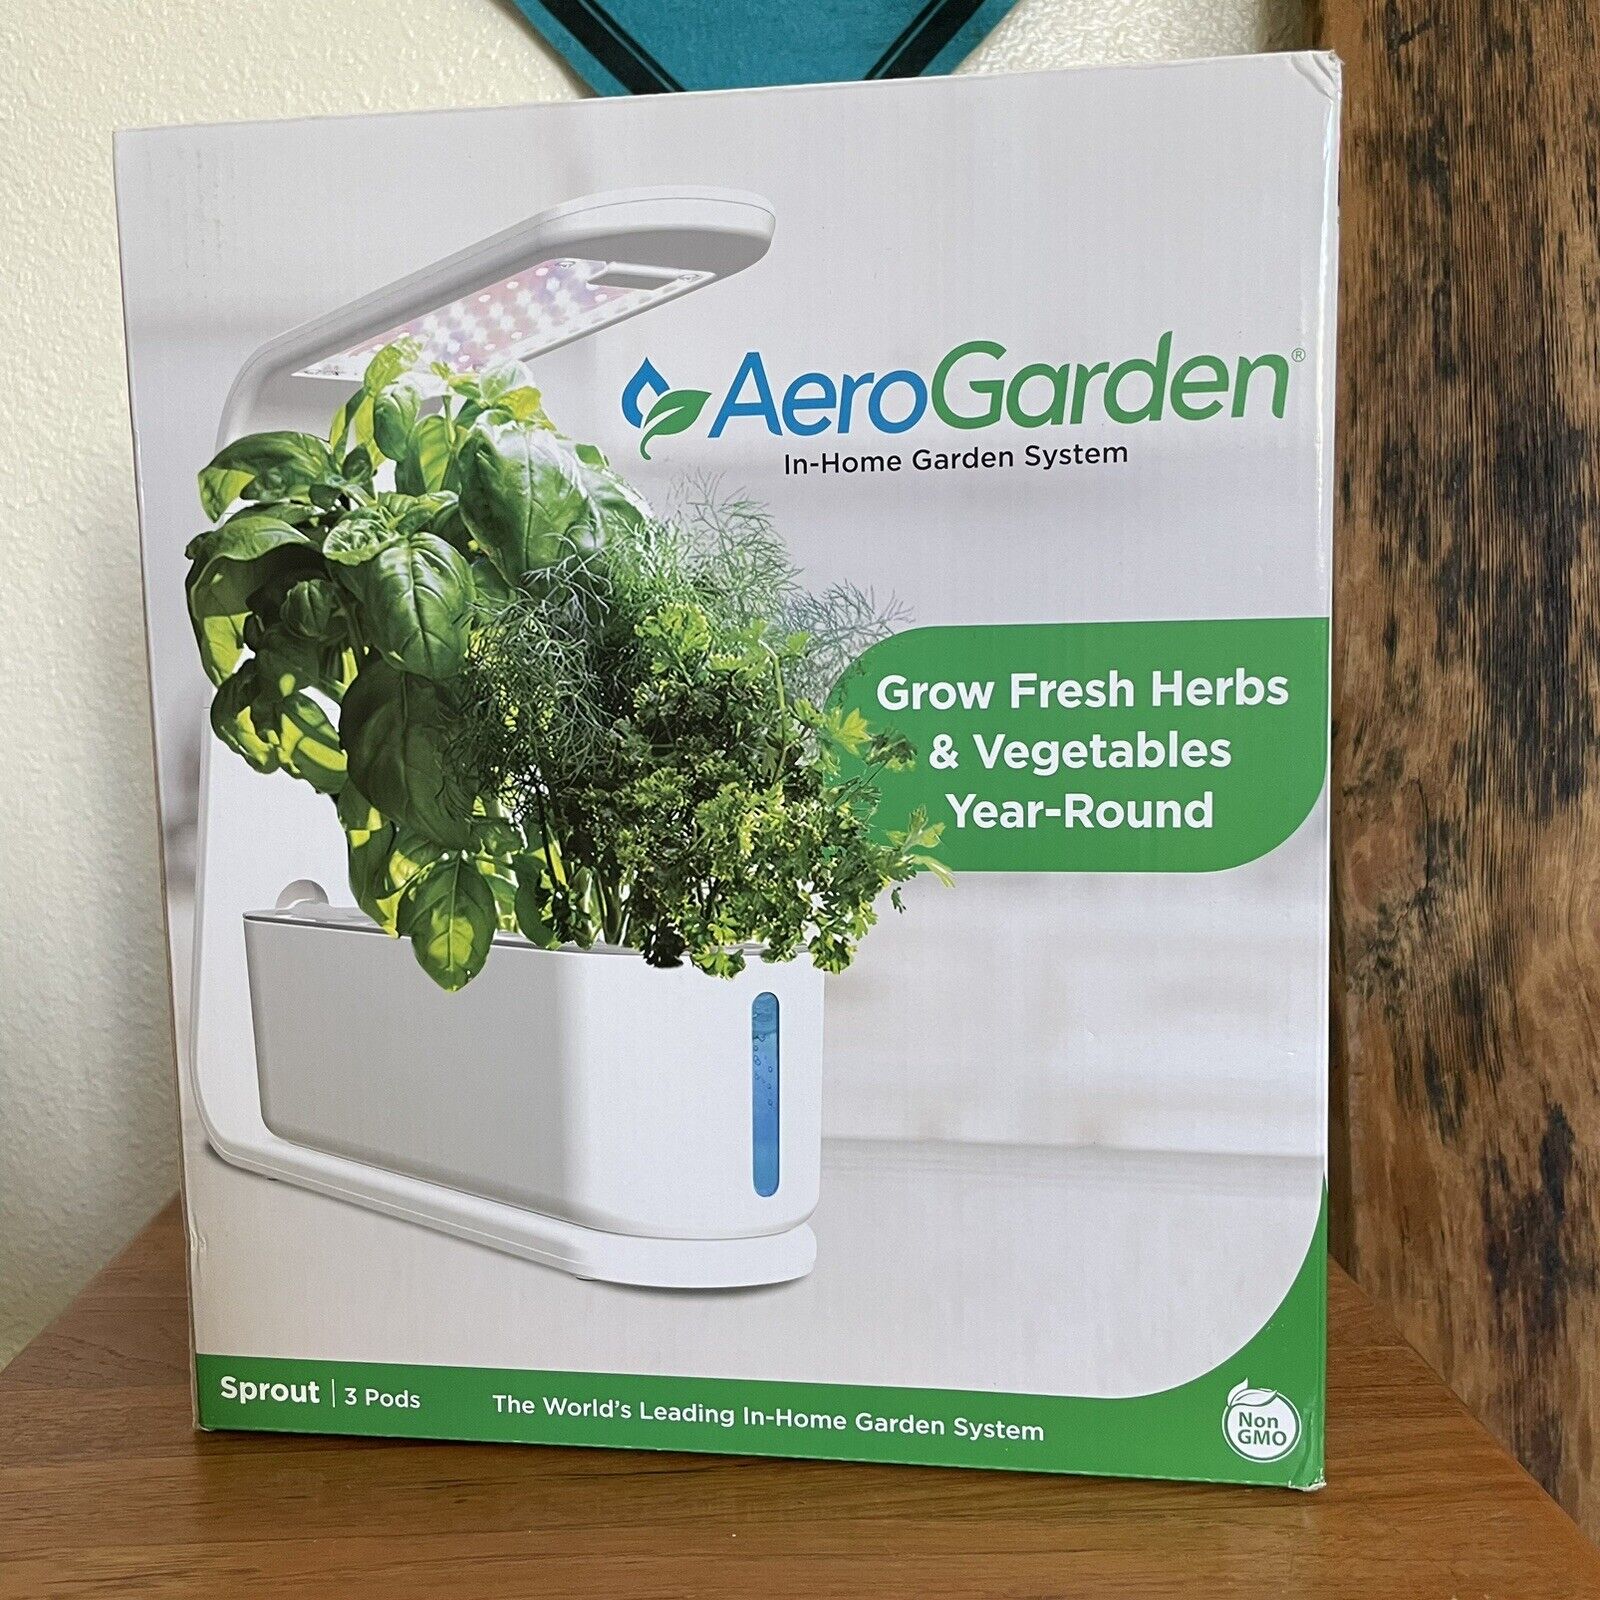 Aero Garden Sprout 3 Pods Indoor Garden Growing System - White - #900825-1200 